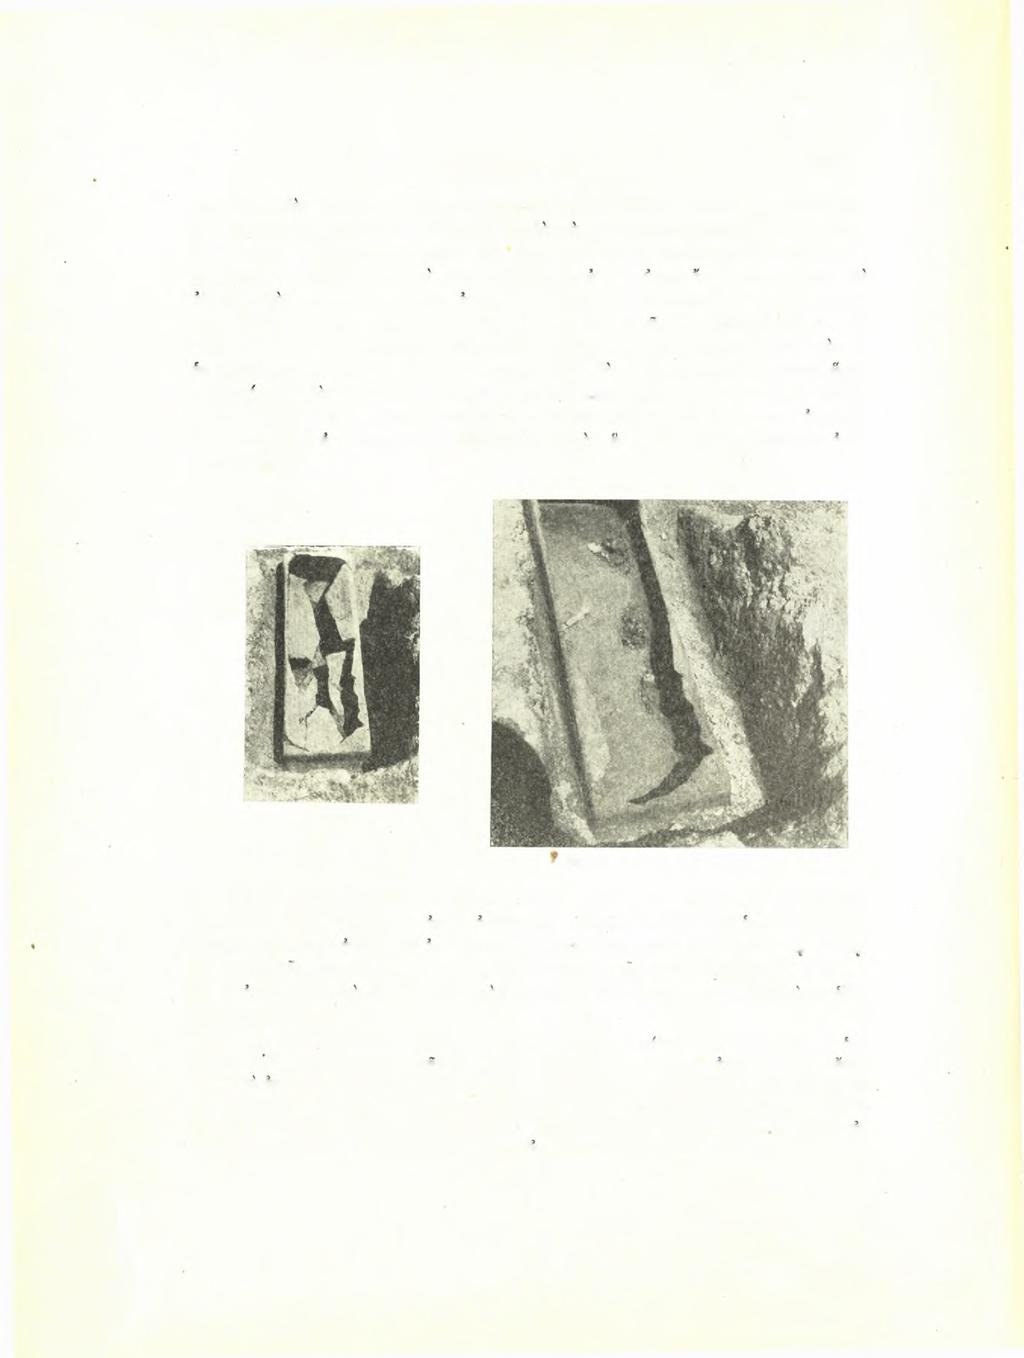 28 Σεραφείμ Ί. Χαριτωνίόου ΑΕ 1958 σμός δμως δεν έδειξε σαφώς ίχνη ή γραμμήν τοίχου. Νοιίως τής στρώσεως τοΰ πηλού διπλή σειρά κιμηλολίθων έλάμβανε σχεδόν την μορφήν τοιχαρίου Α.-Δ.